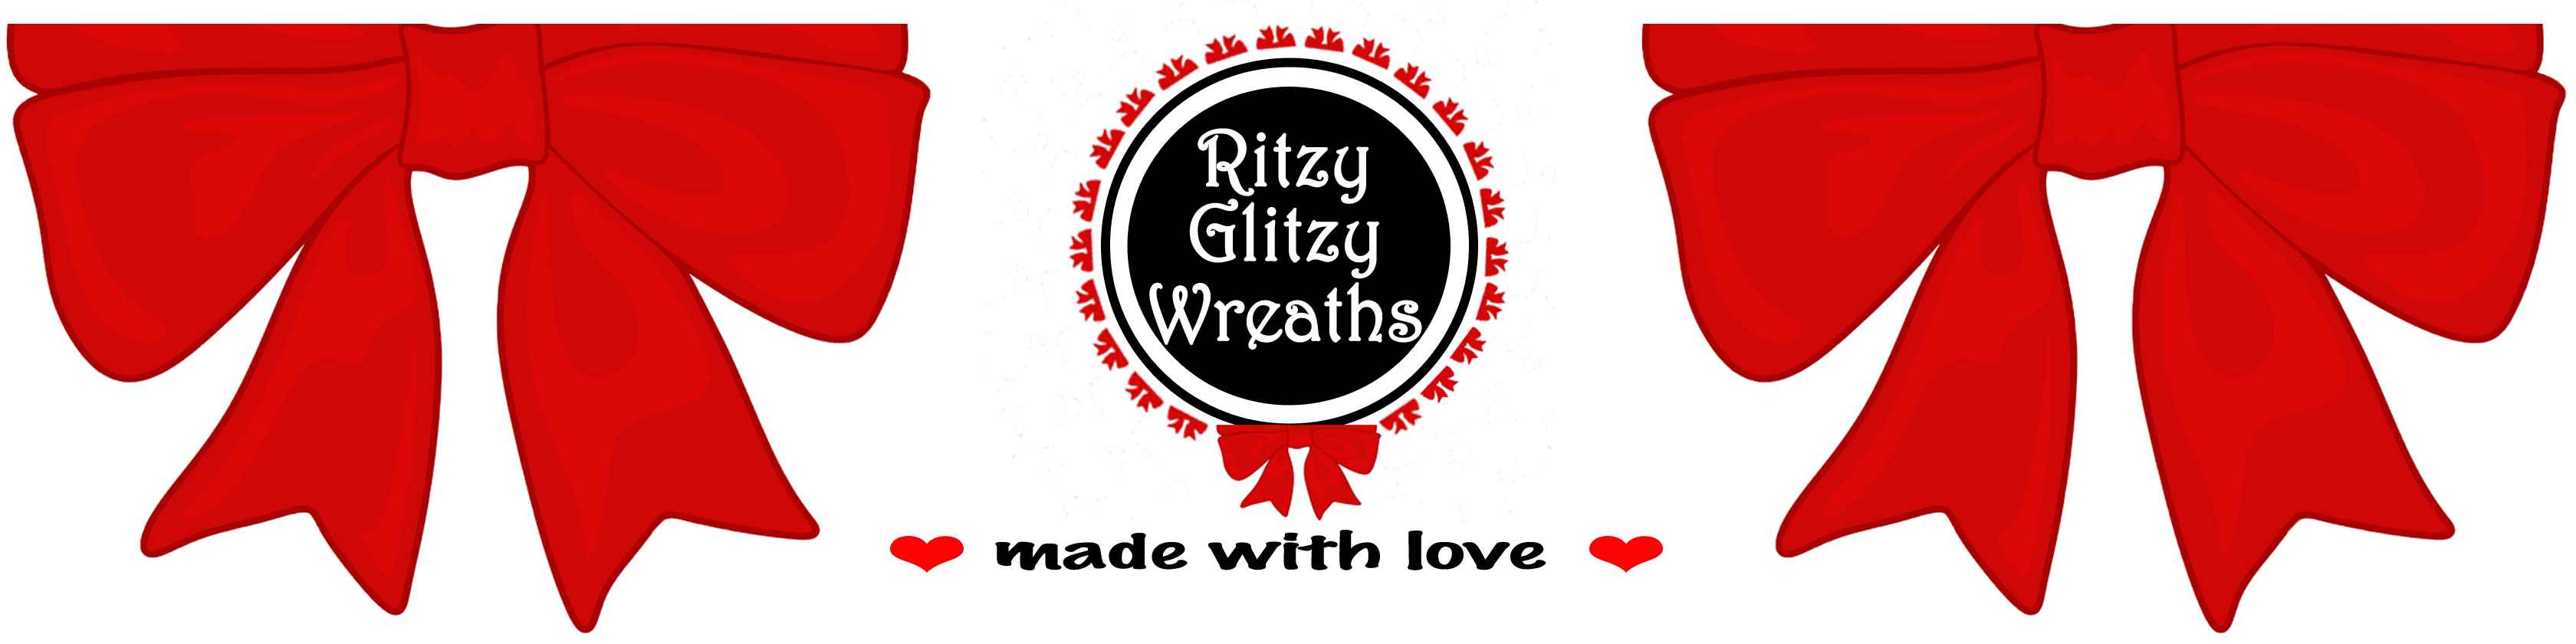 Ritzy Glitzy Wreaths logo 